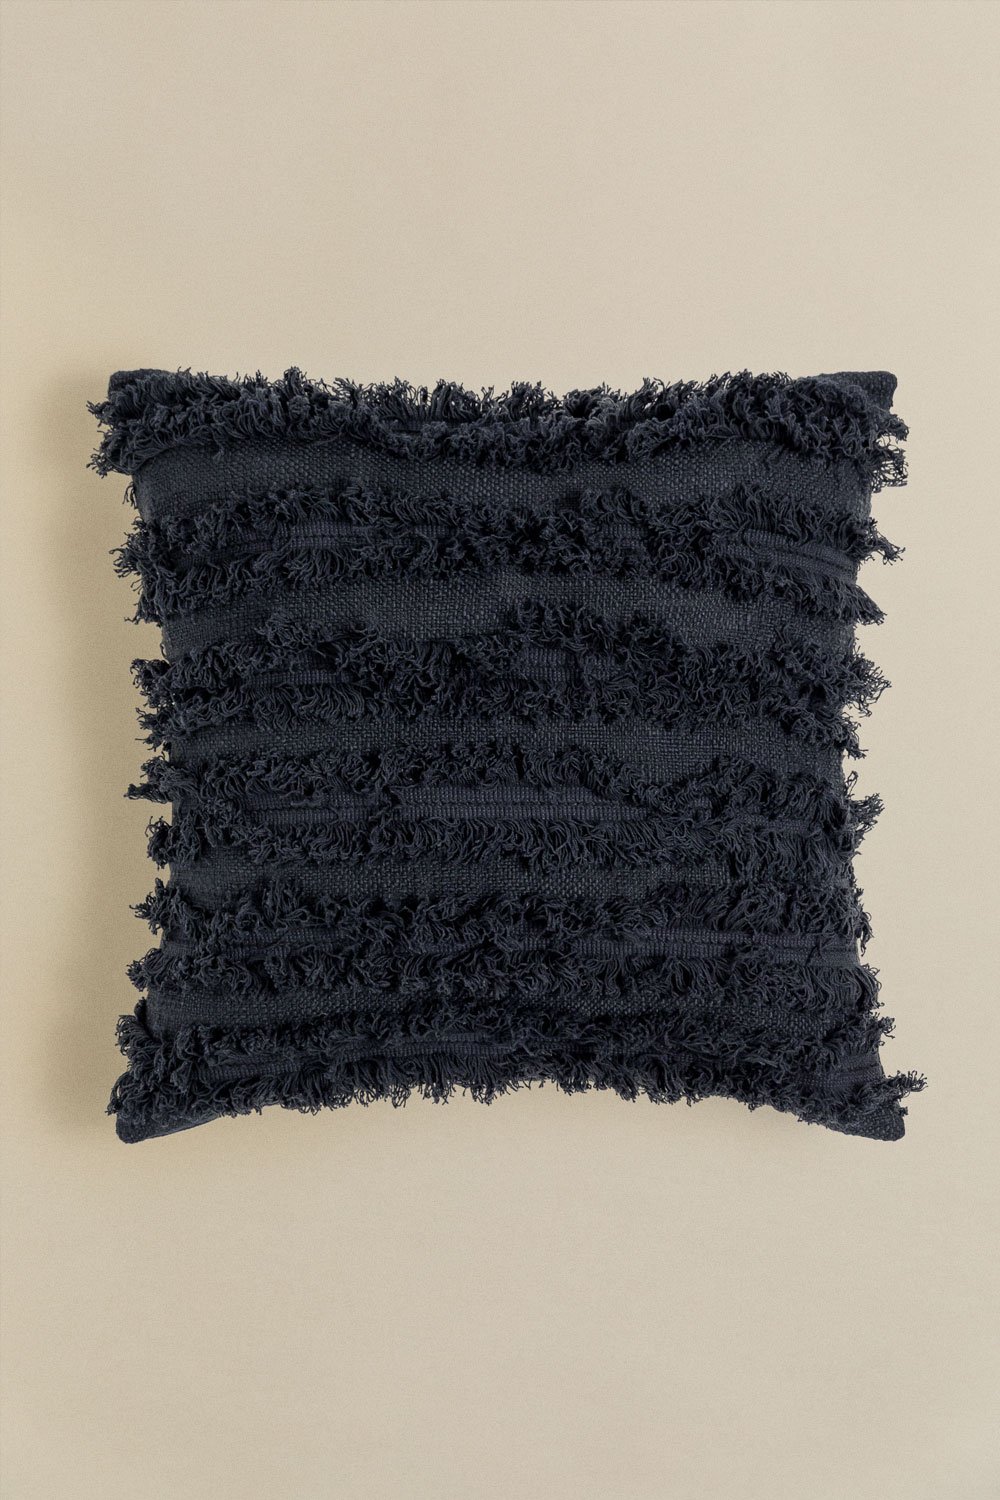 Square Cotton Cushion (45x45 cm) Crato, gallery image 1